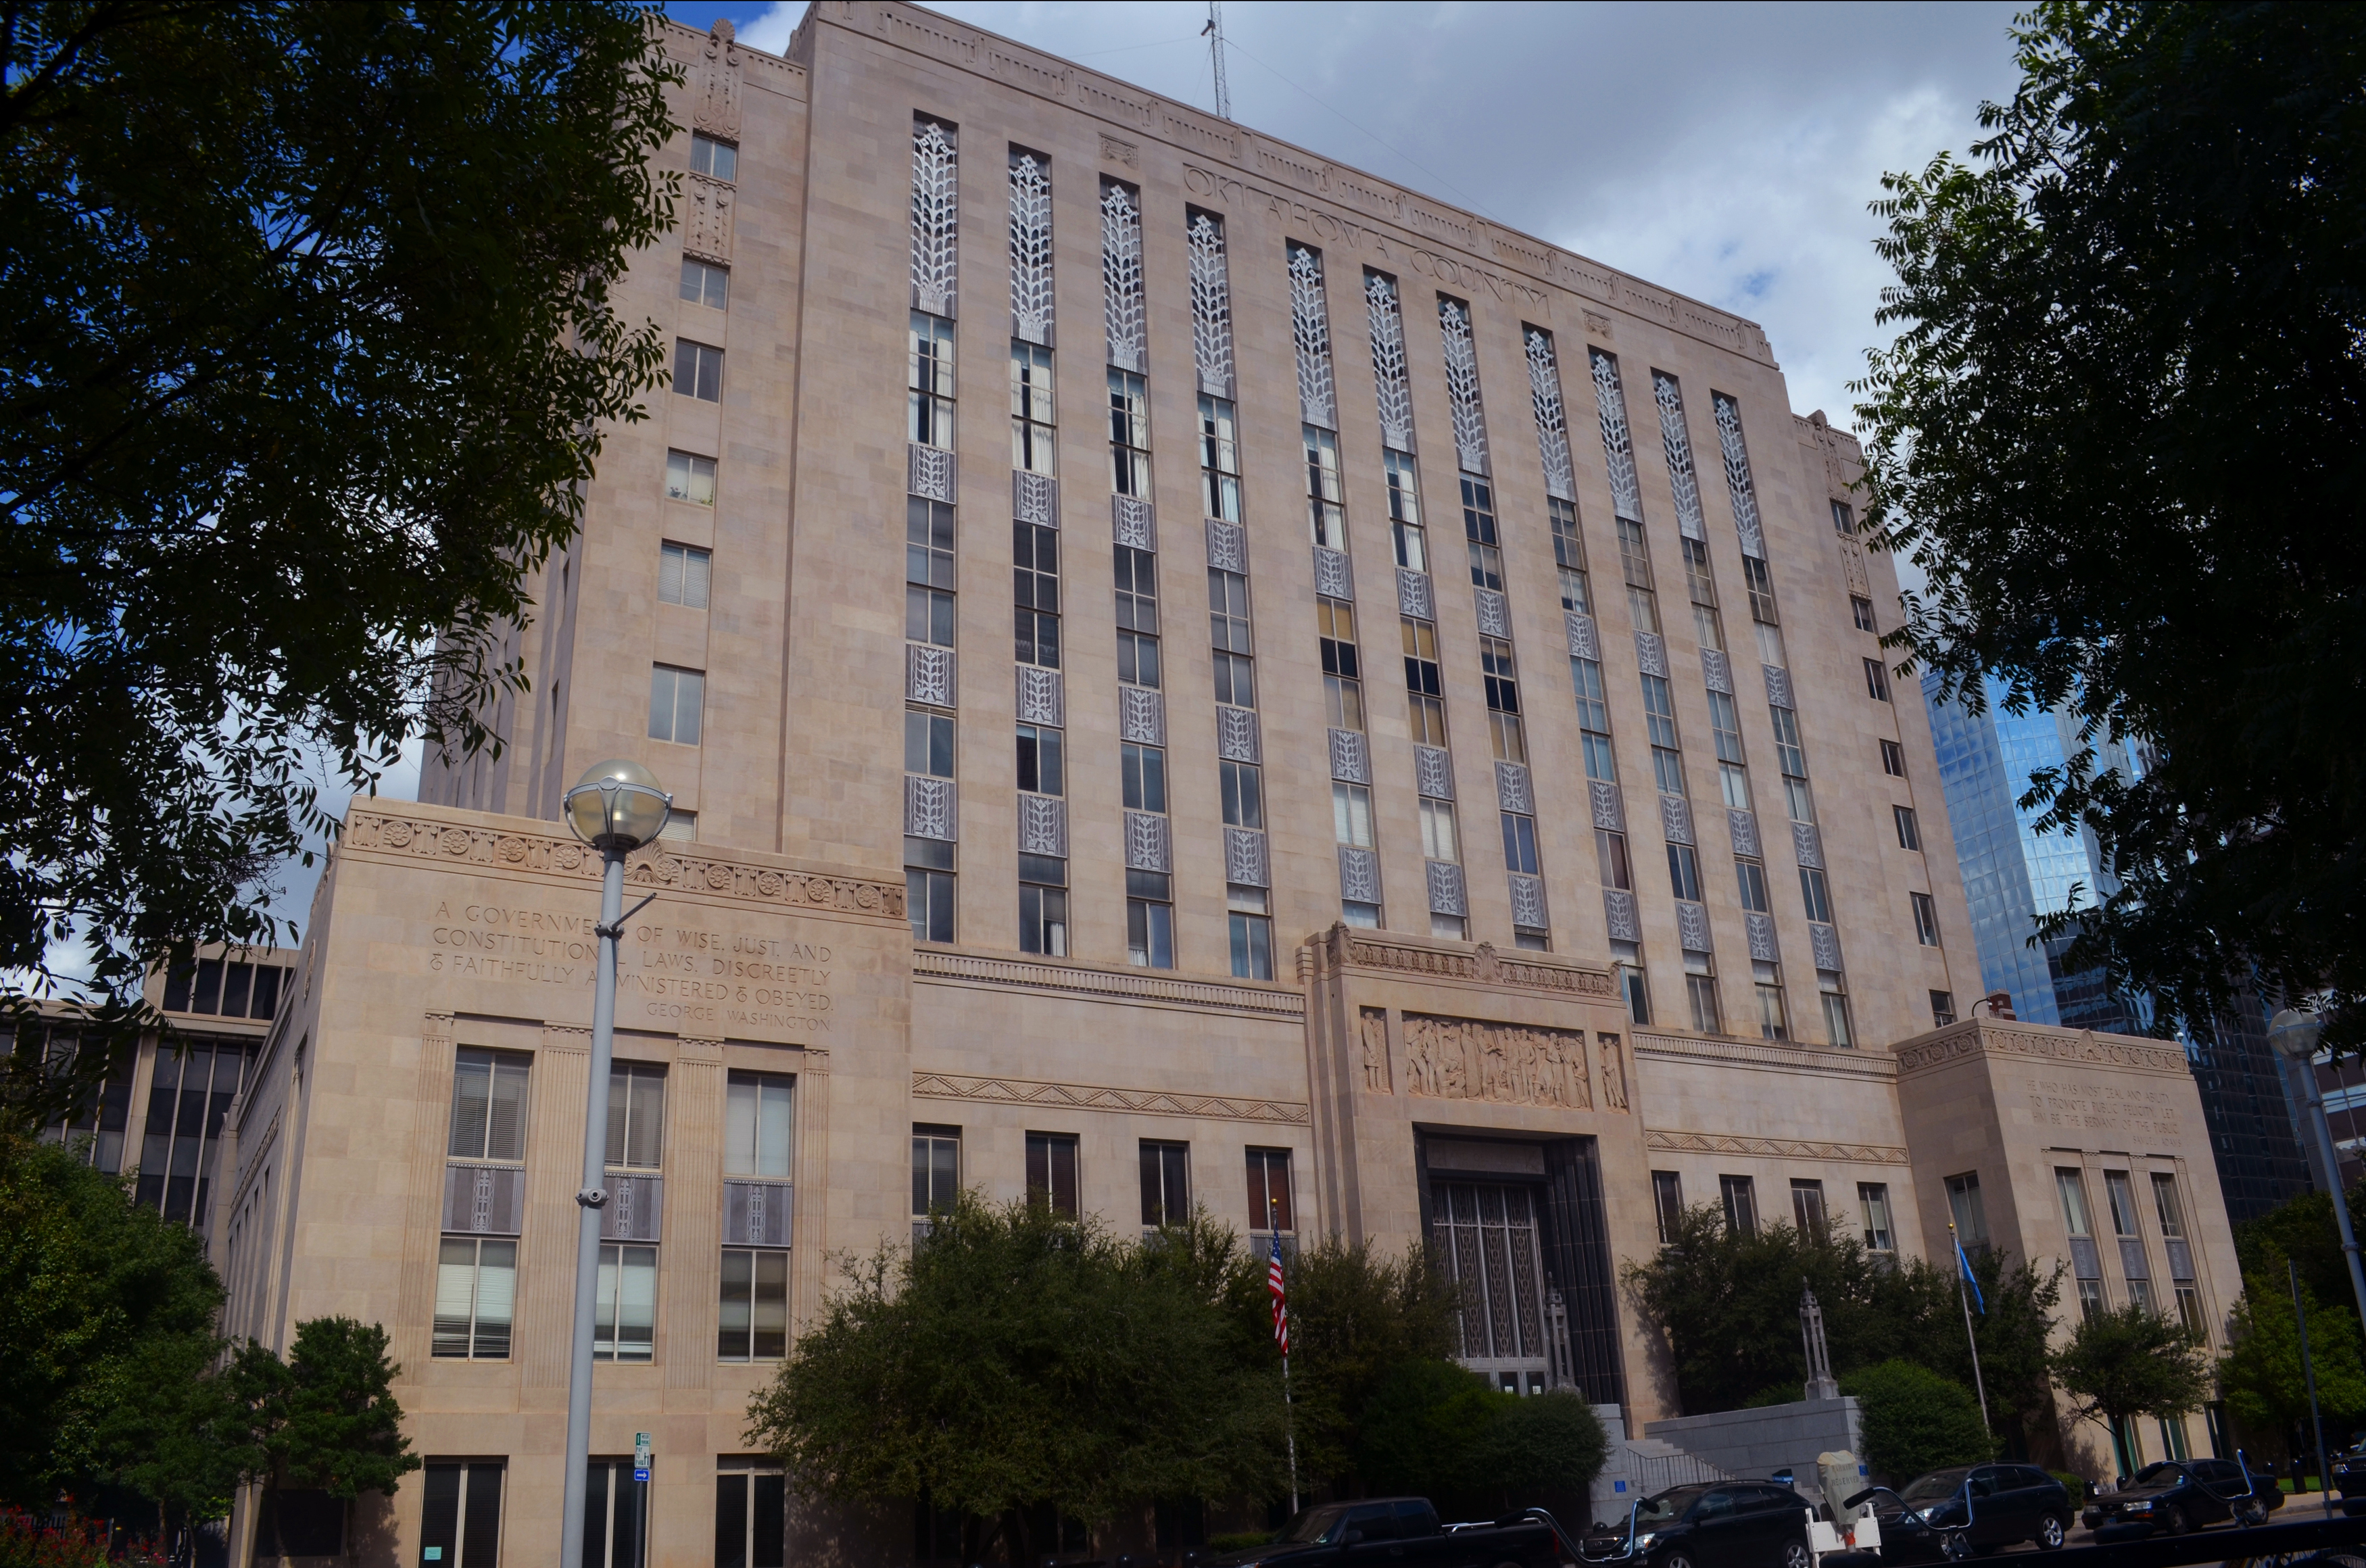 File:Oklahoma City OK Oklahoma County Courthouse (Taken 20120926